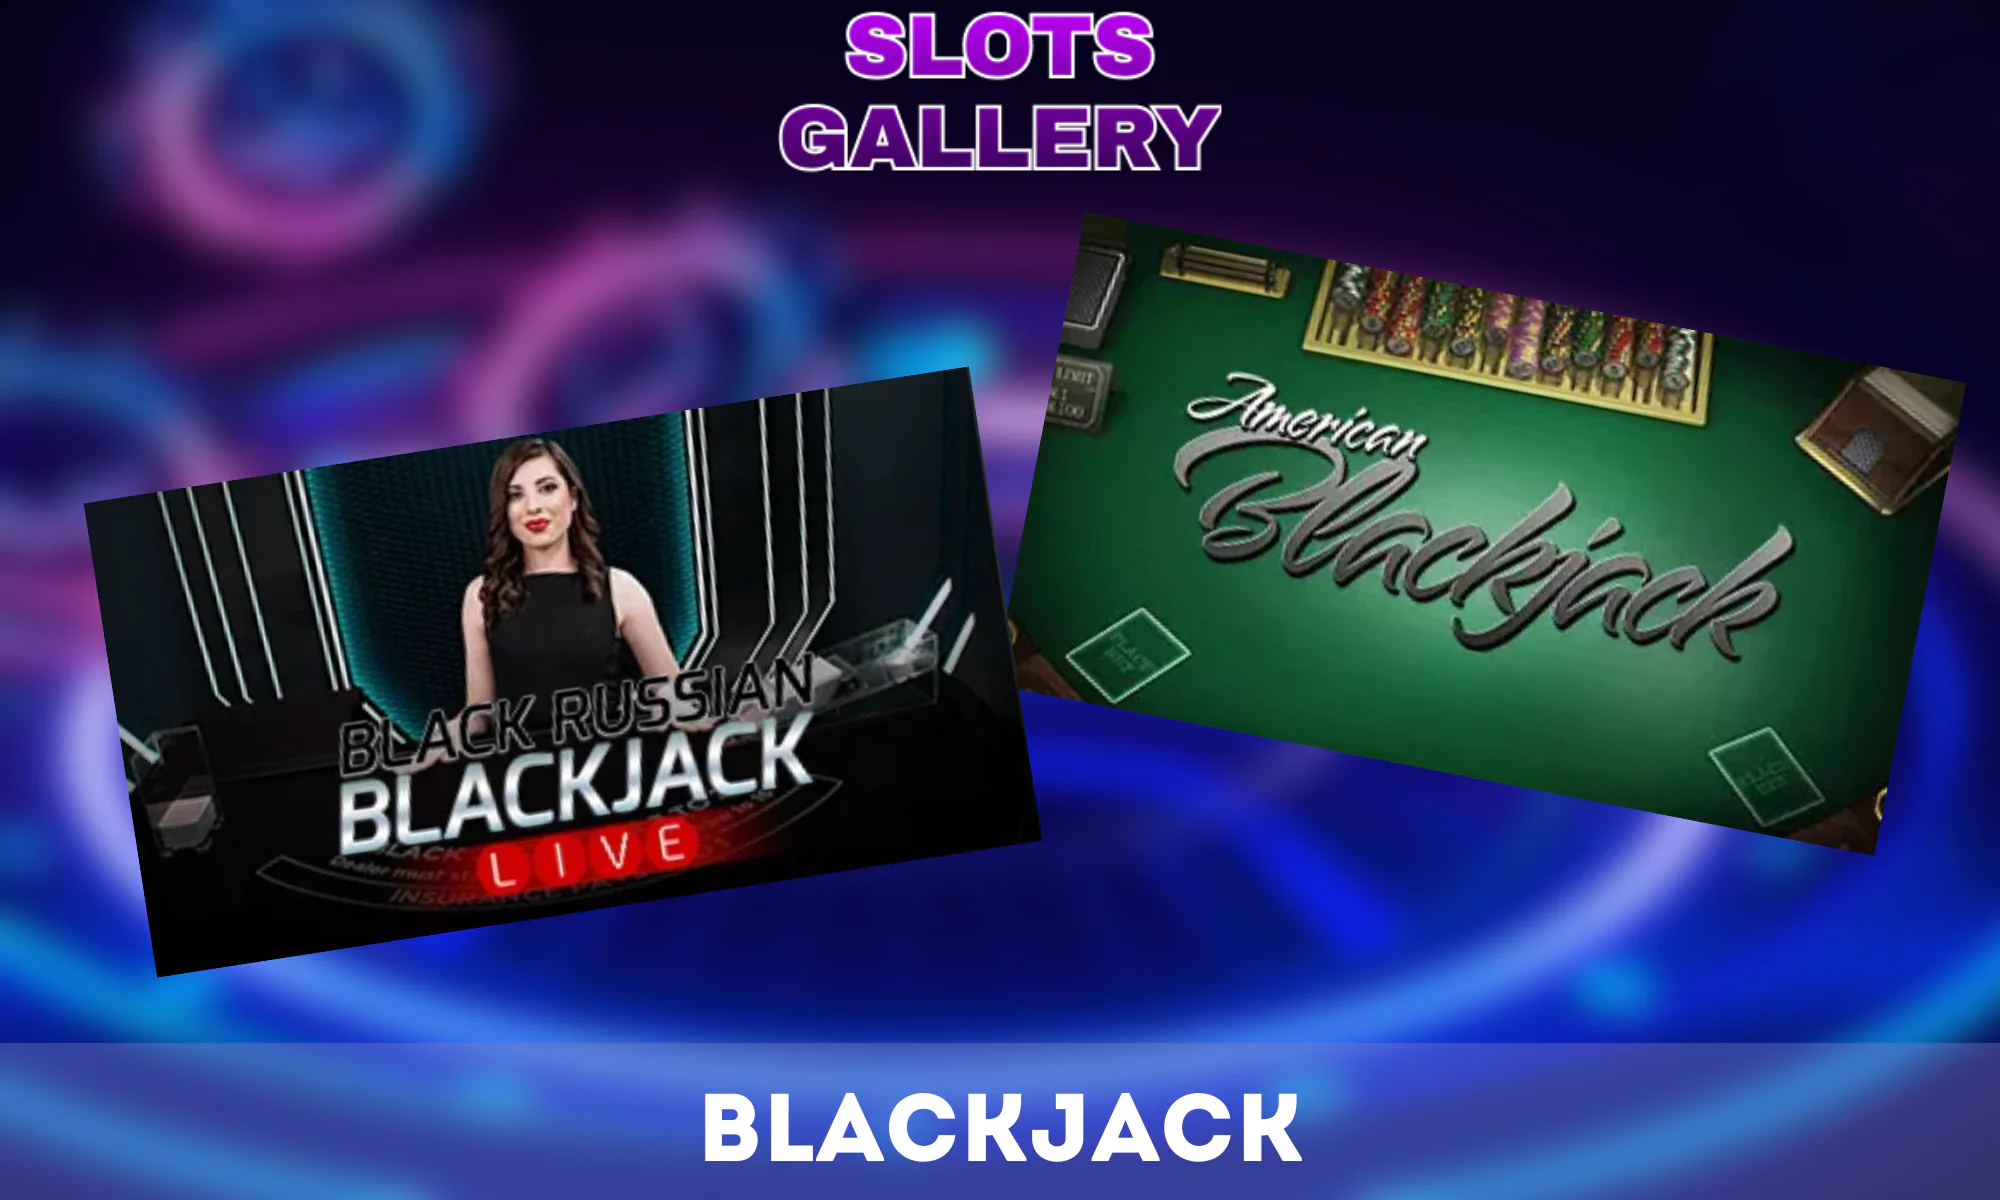 Le site Slots gallery propose différentes versions du blackjack